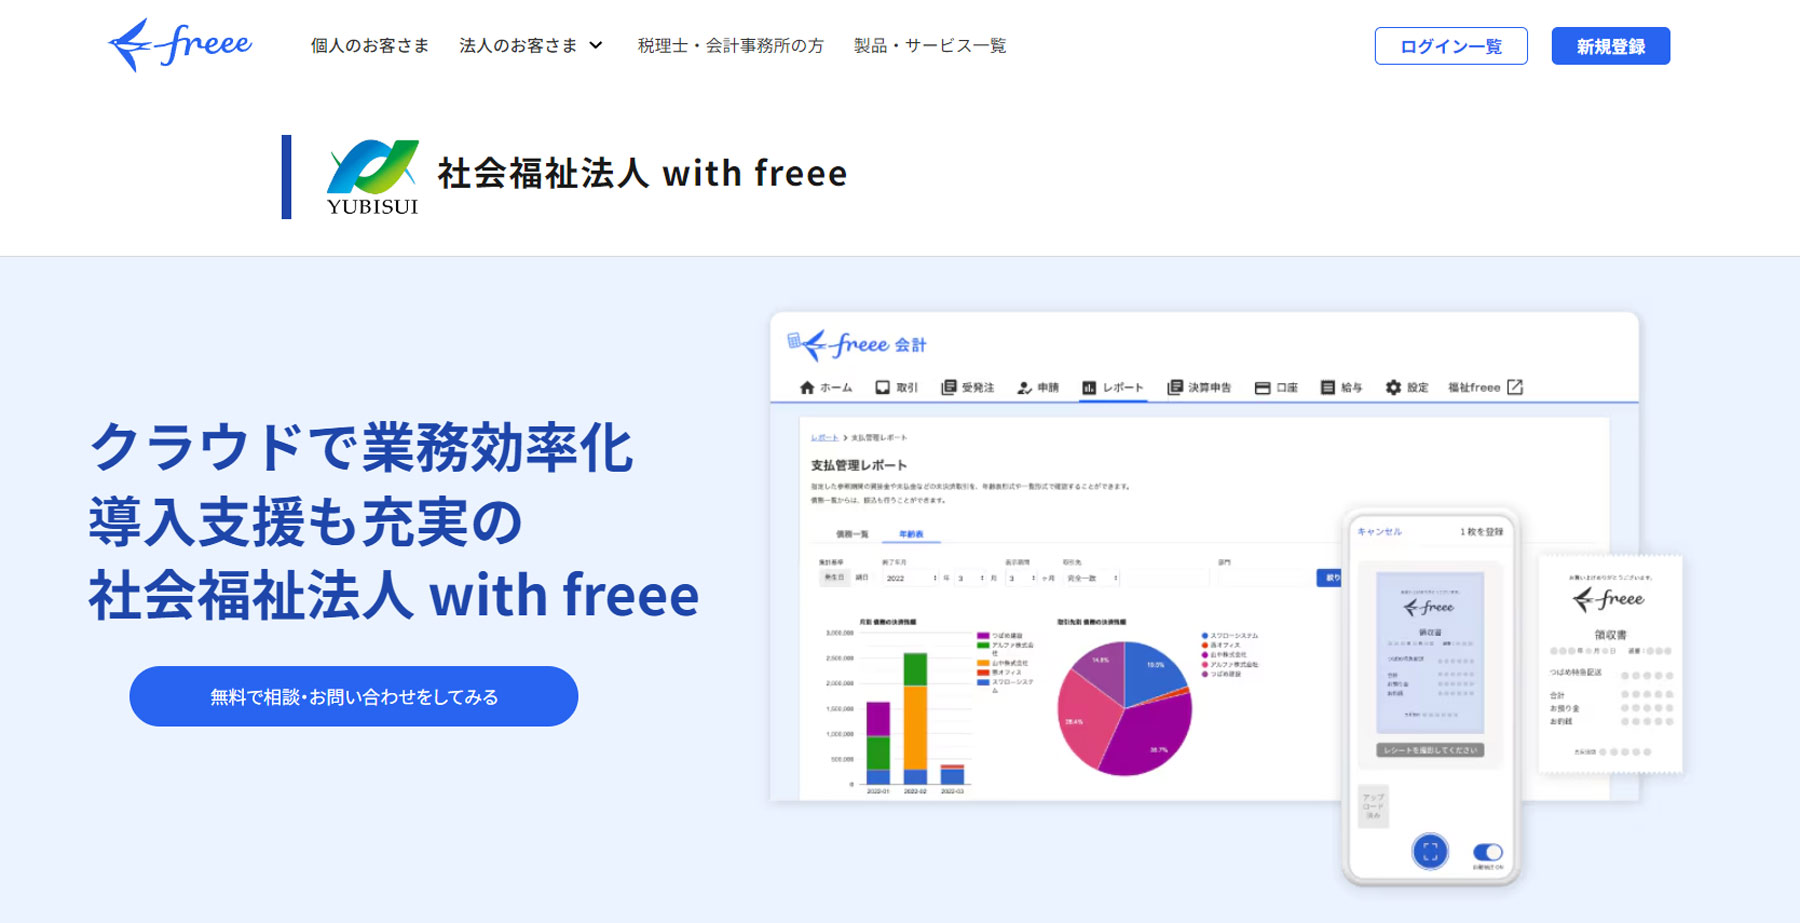 社会福祉法人 with freee公式Webサイト